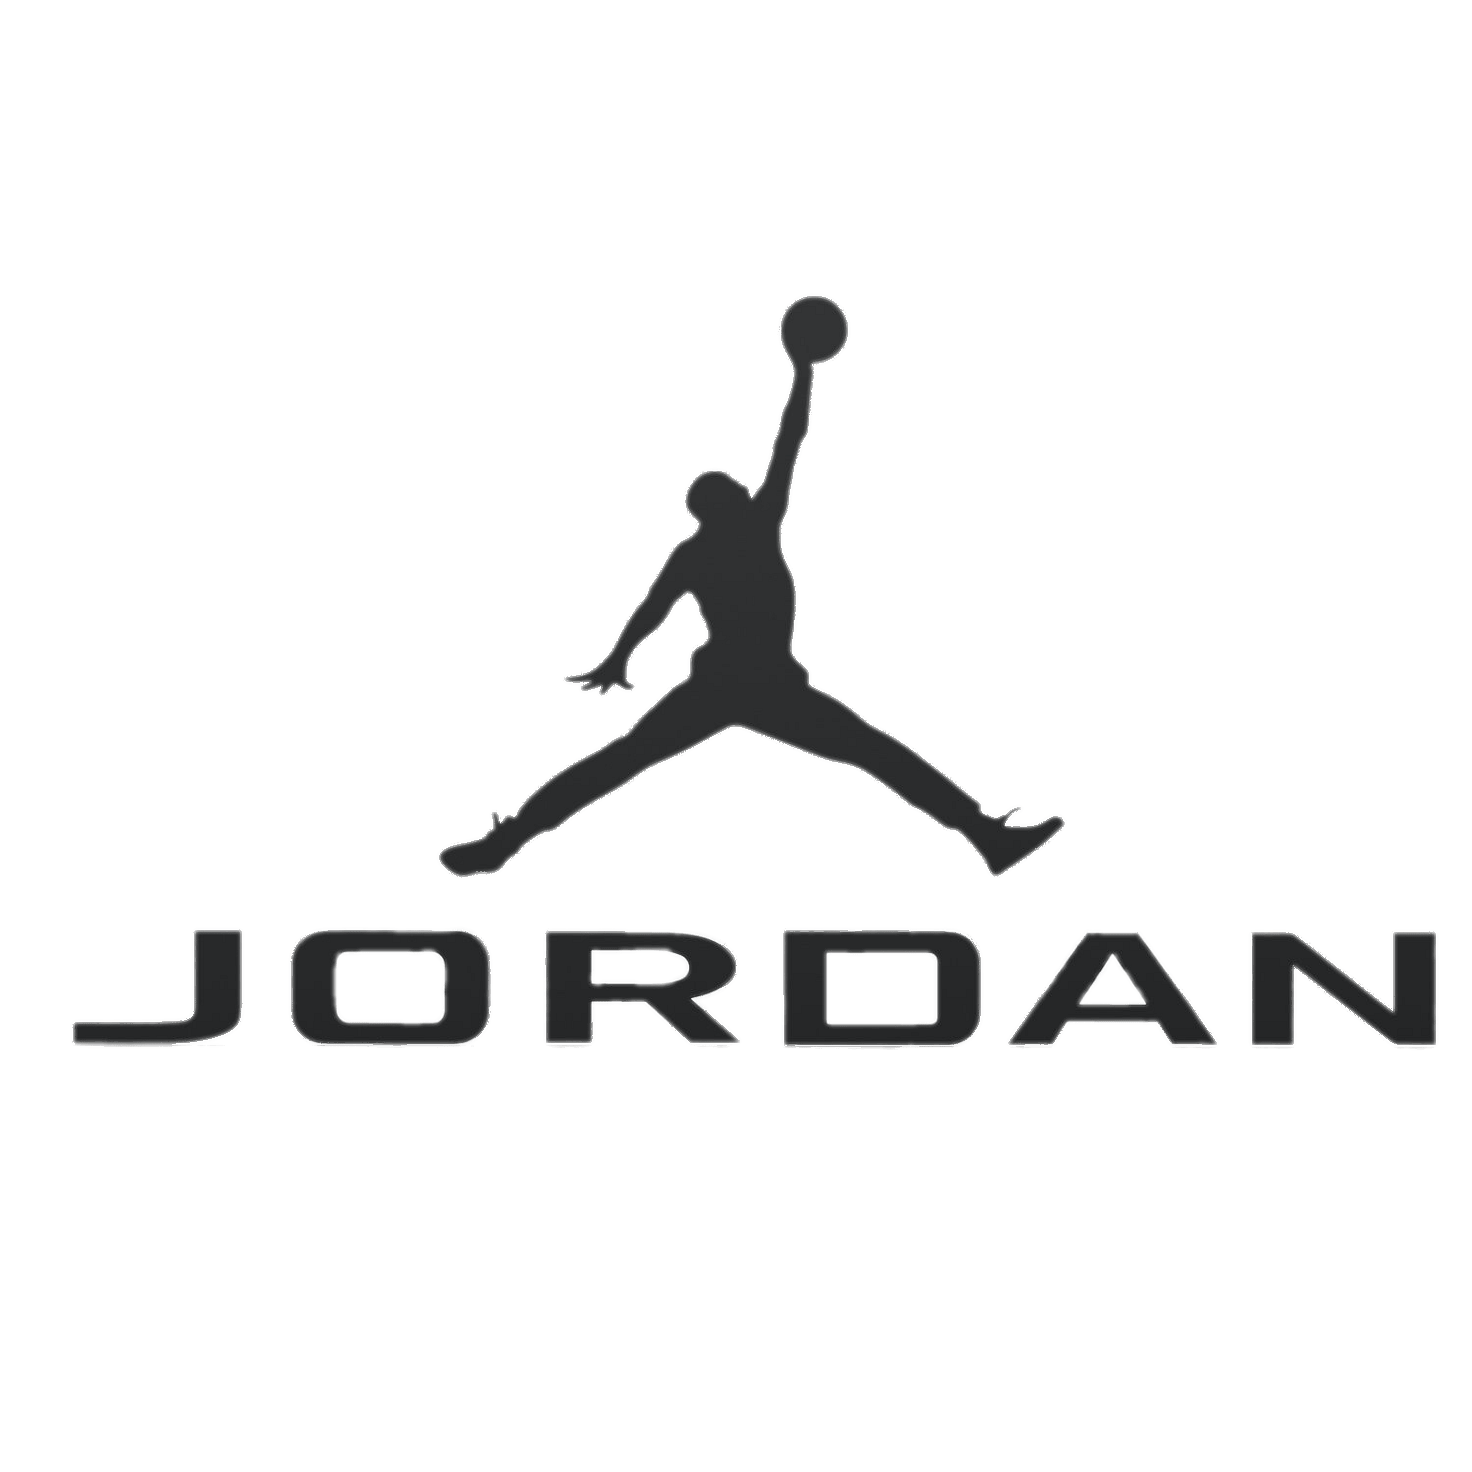 Air Jordan Logo Transparent File